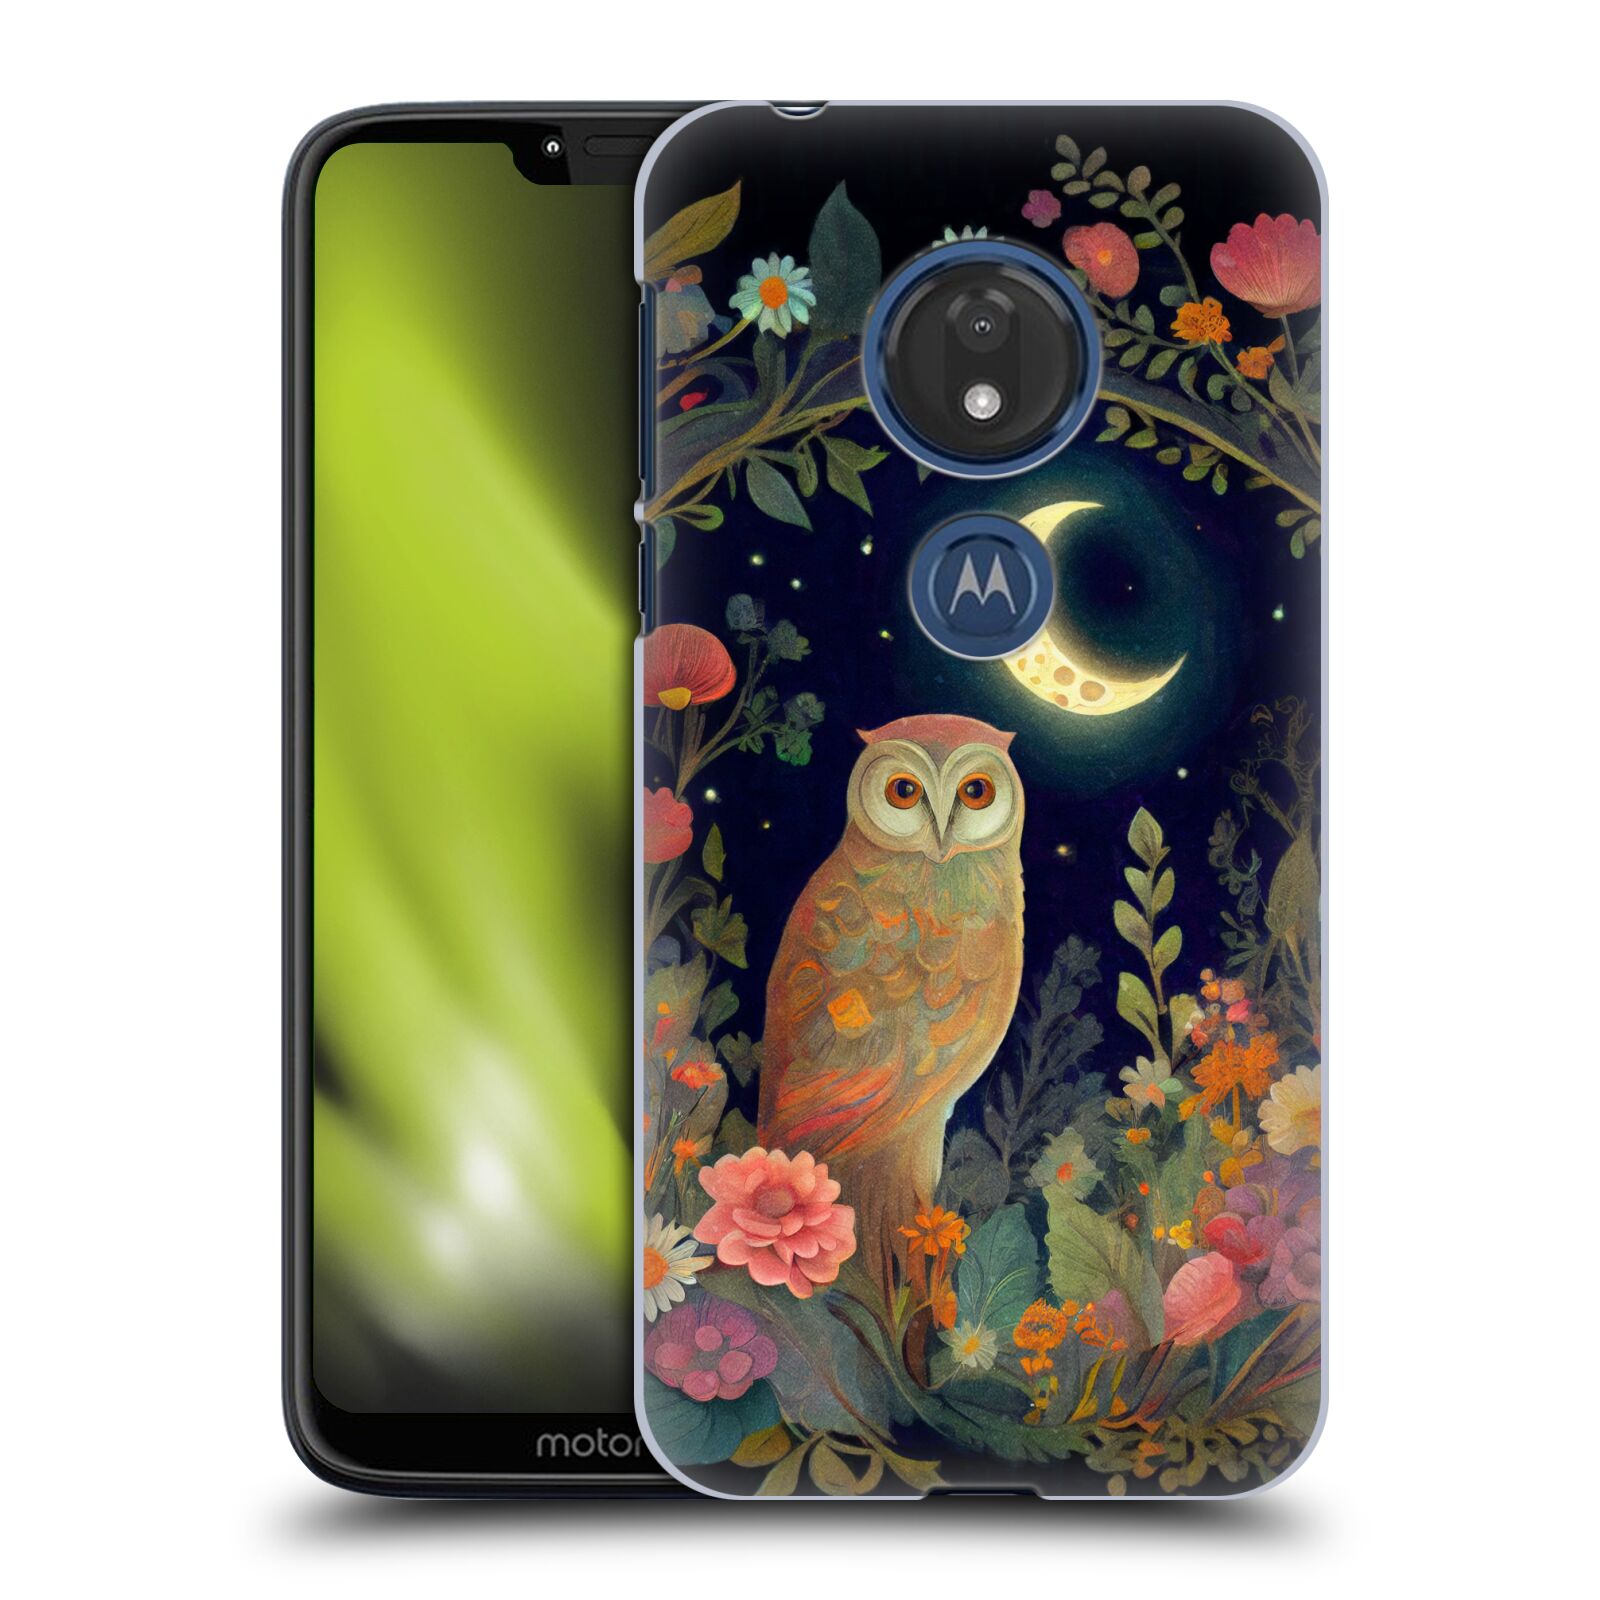 Obal na mobil Motorola Moto G7 Play - HEAD CASE - JK Stewart sova a měsíc